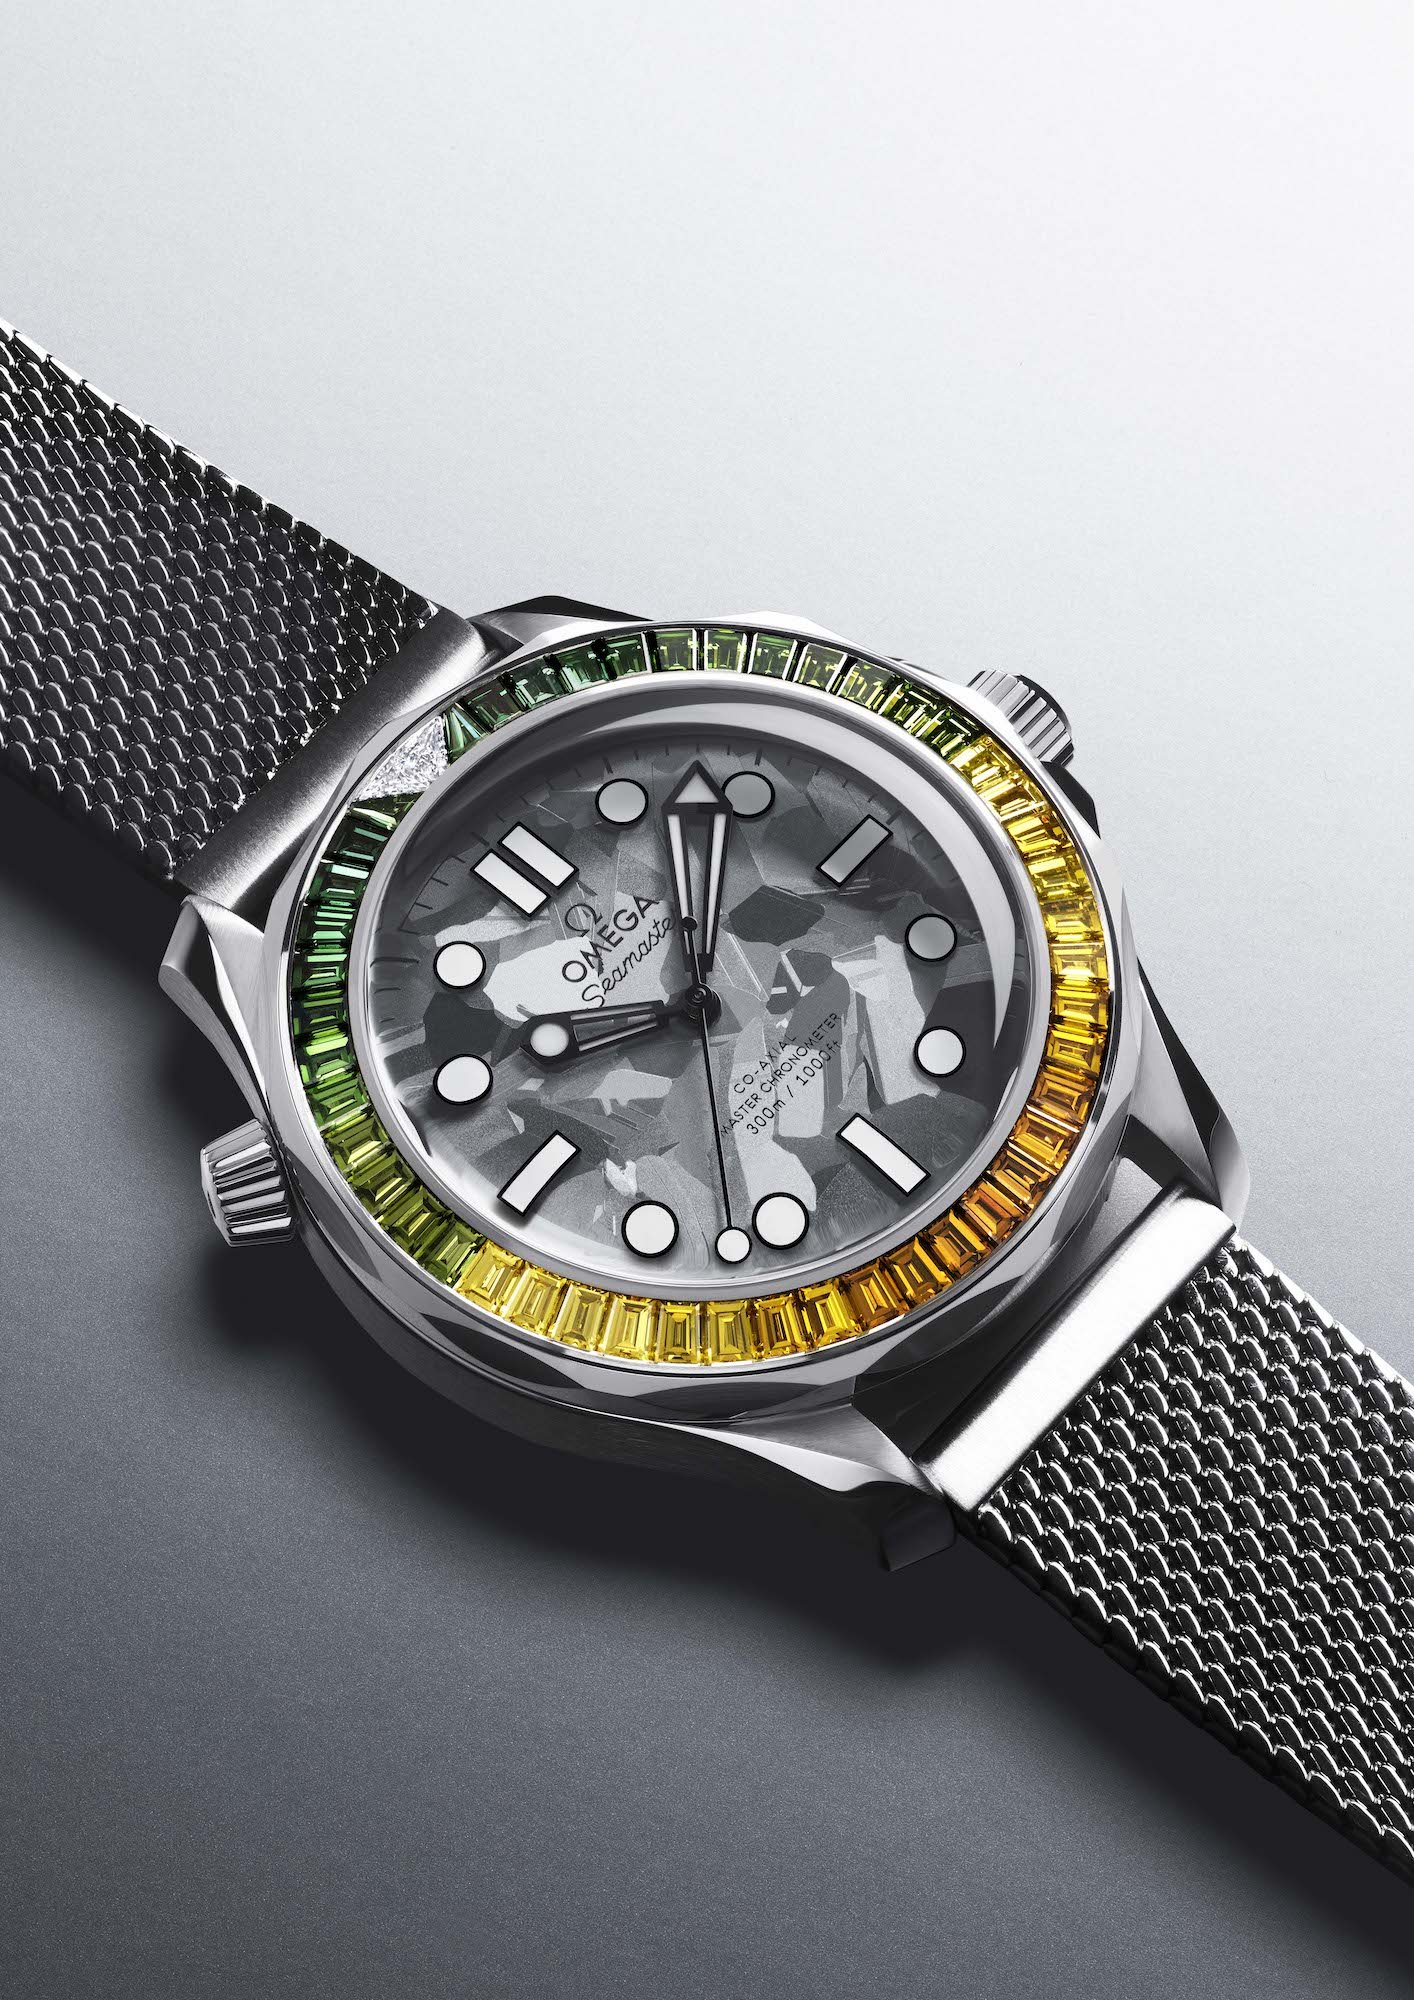 Omega представляет дуэт часов Seamaster Diver 300M, посвященных 60-летию Джеймса Бонда